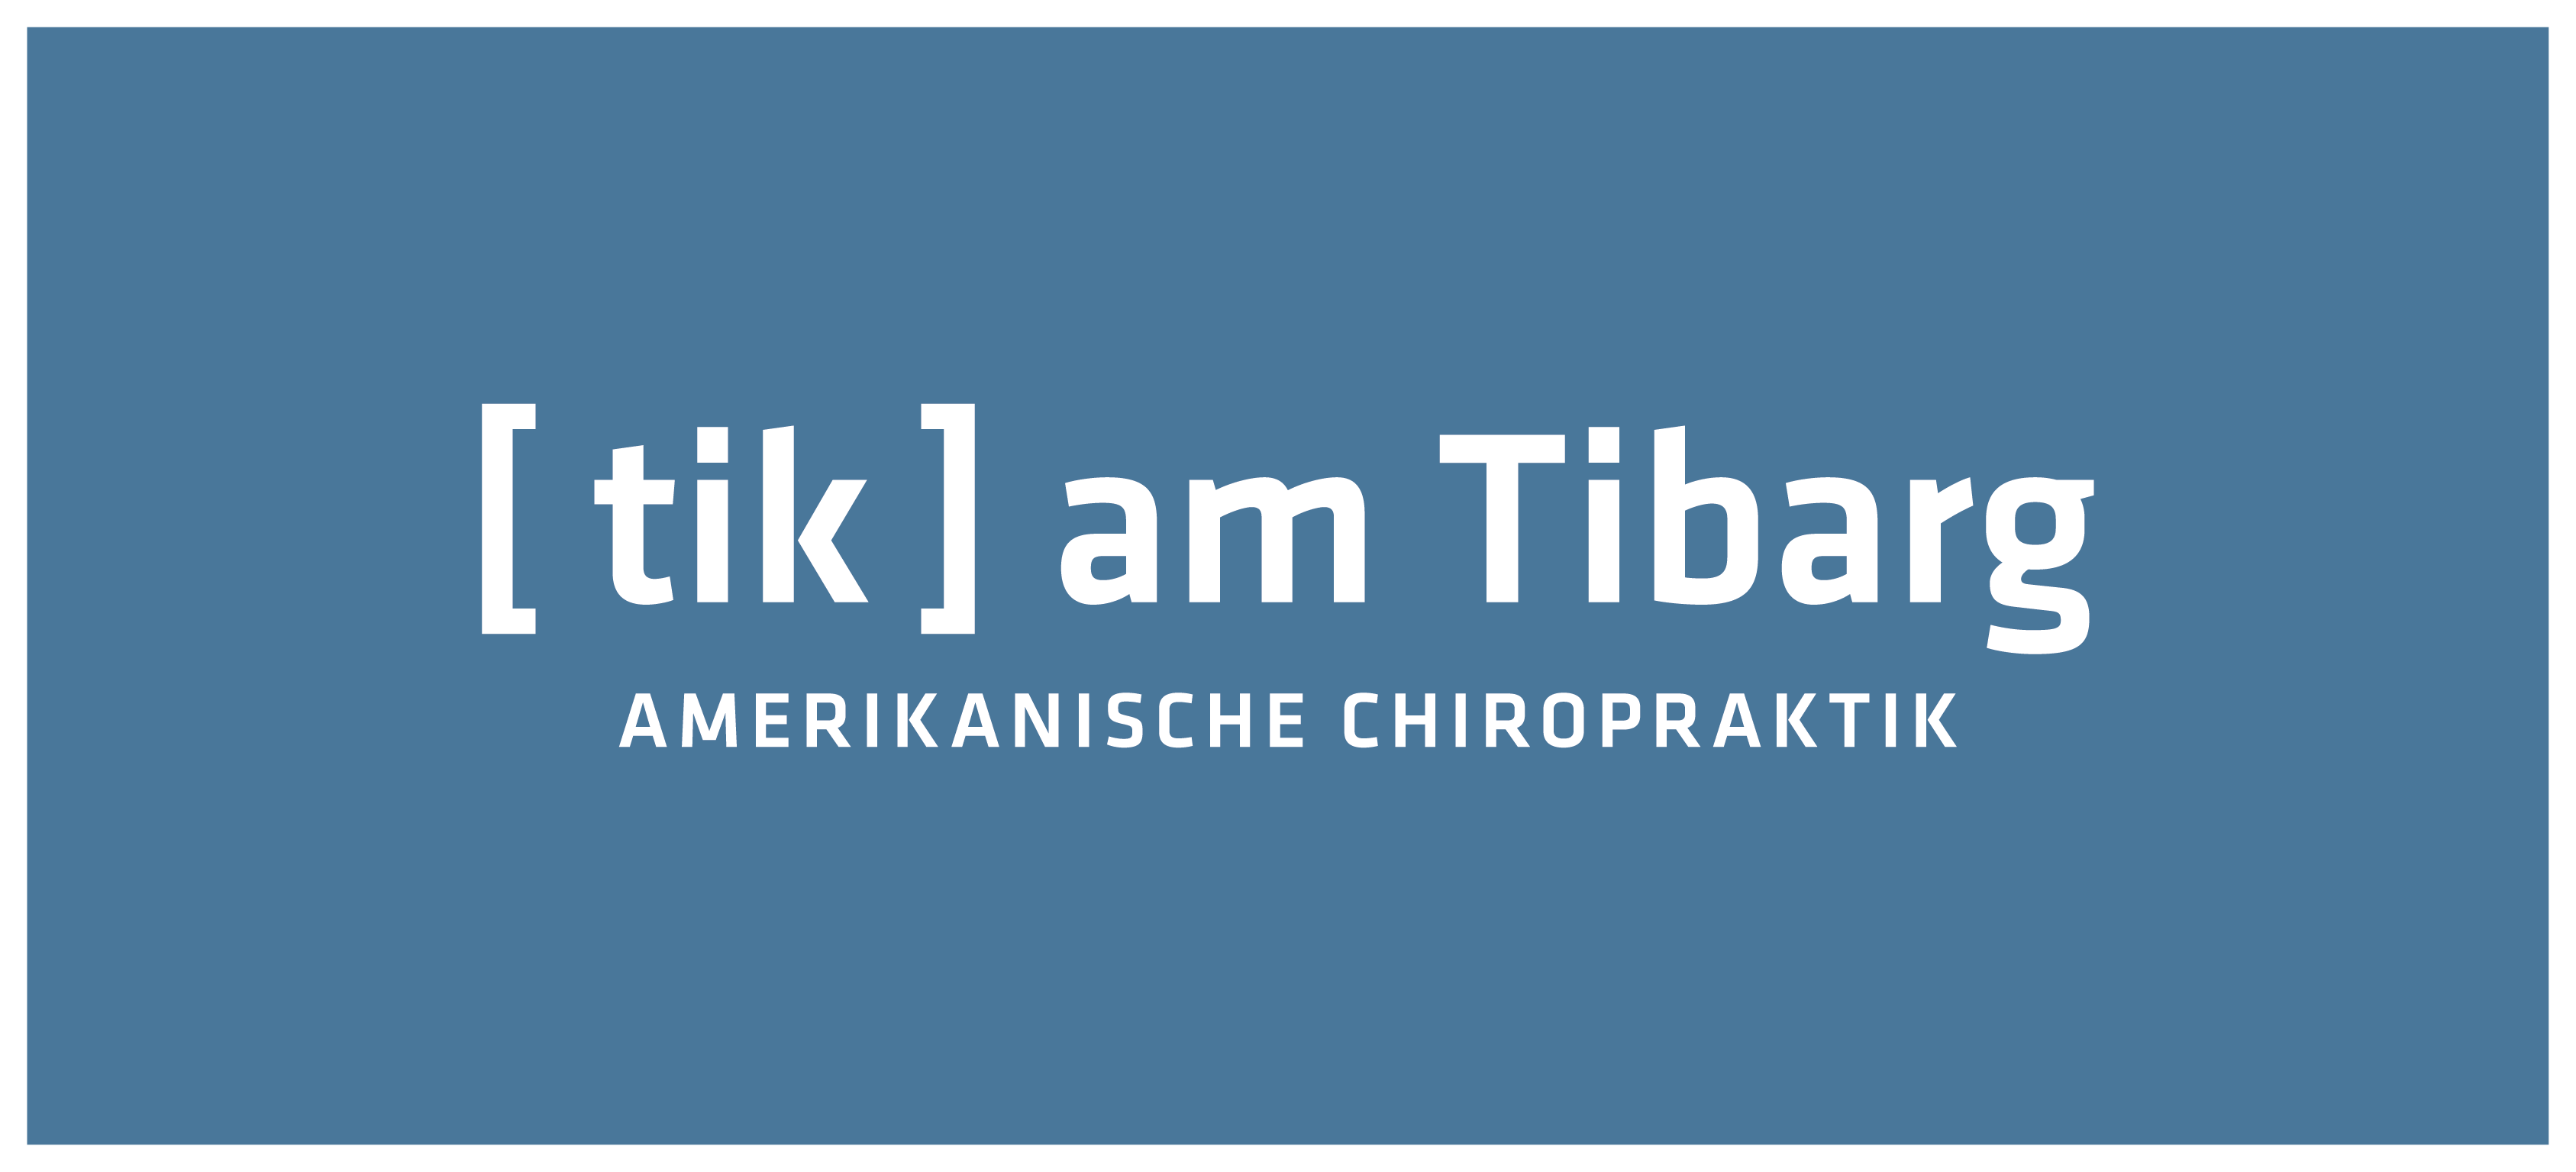 Bild 1 tik am Tibarg – Amerikanische Chiropraktik – Privatpraxis Marei Schachschneider in Hamburg